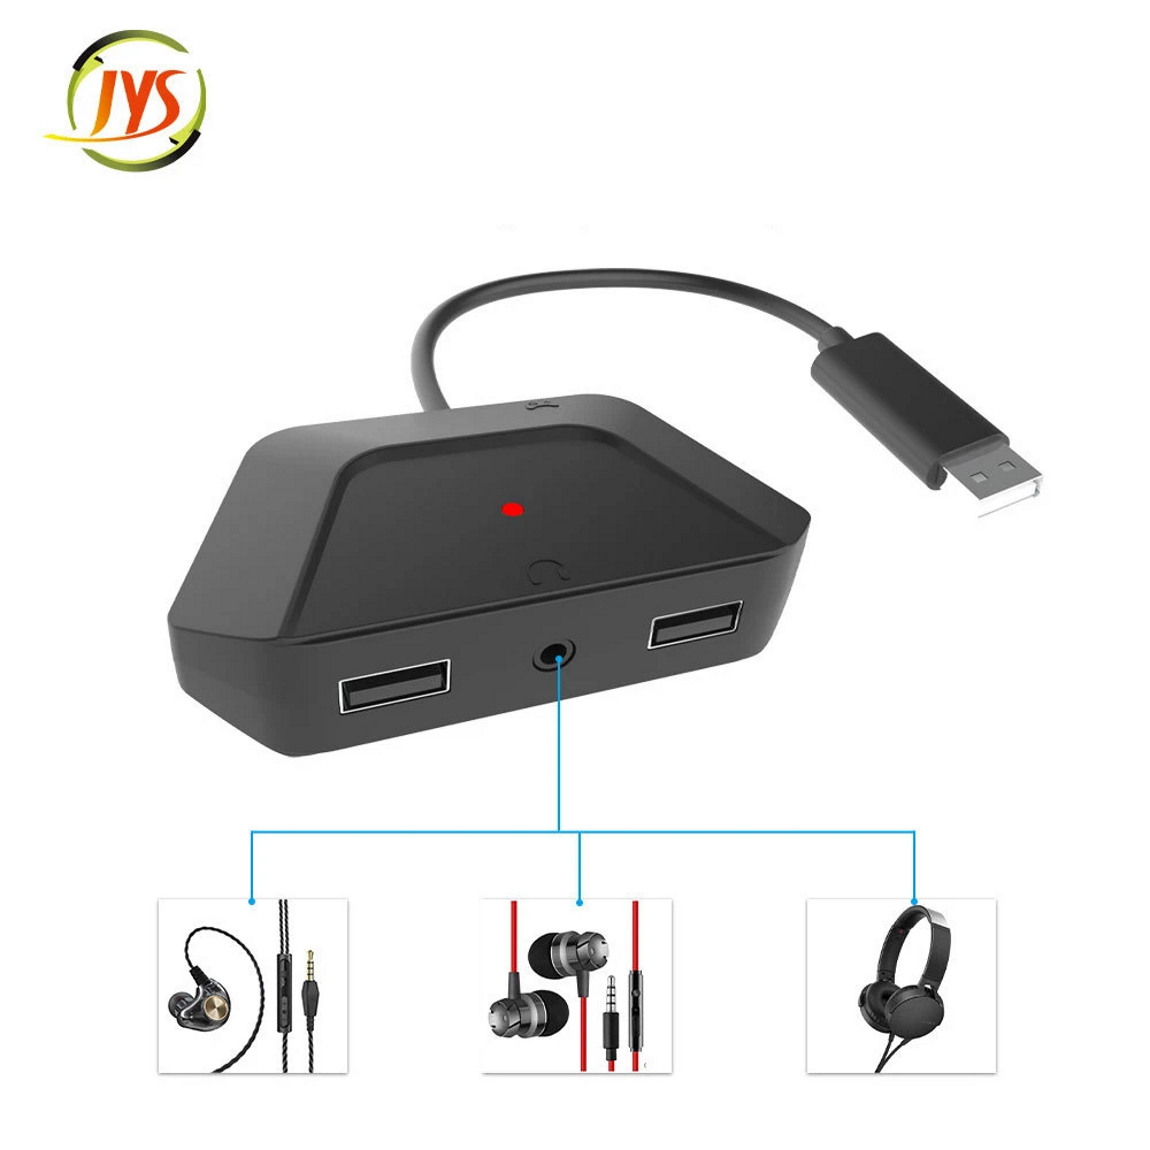 αντάπτορας για ποντίκι και πληκτρολόγιο JYS NS200 με υποδοχή ακουστικών